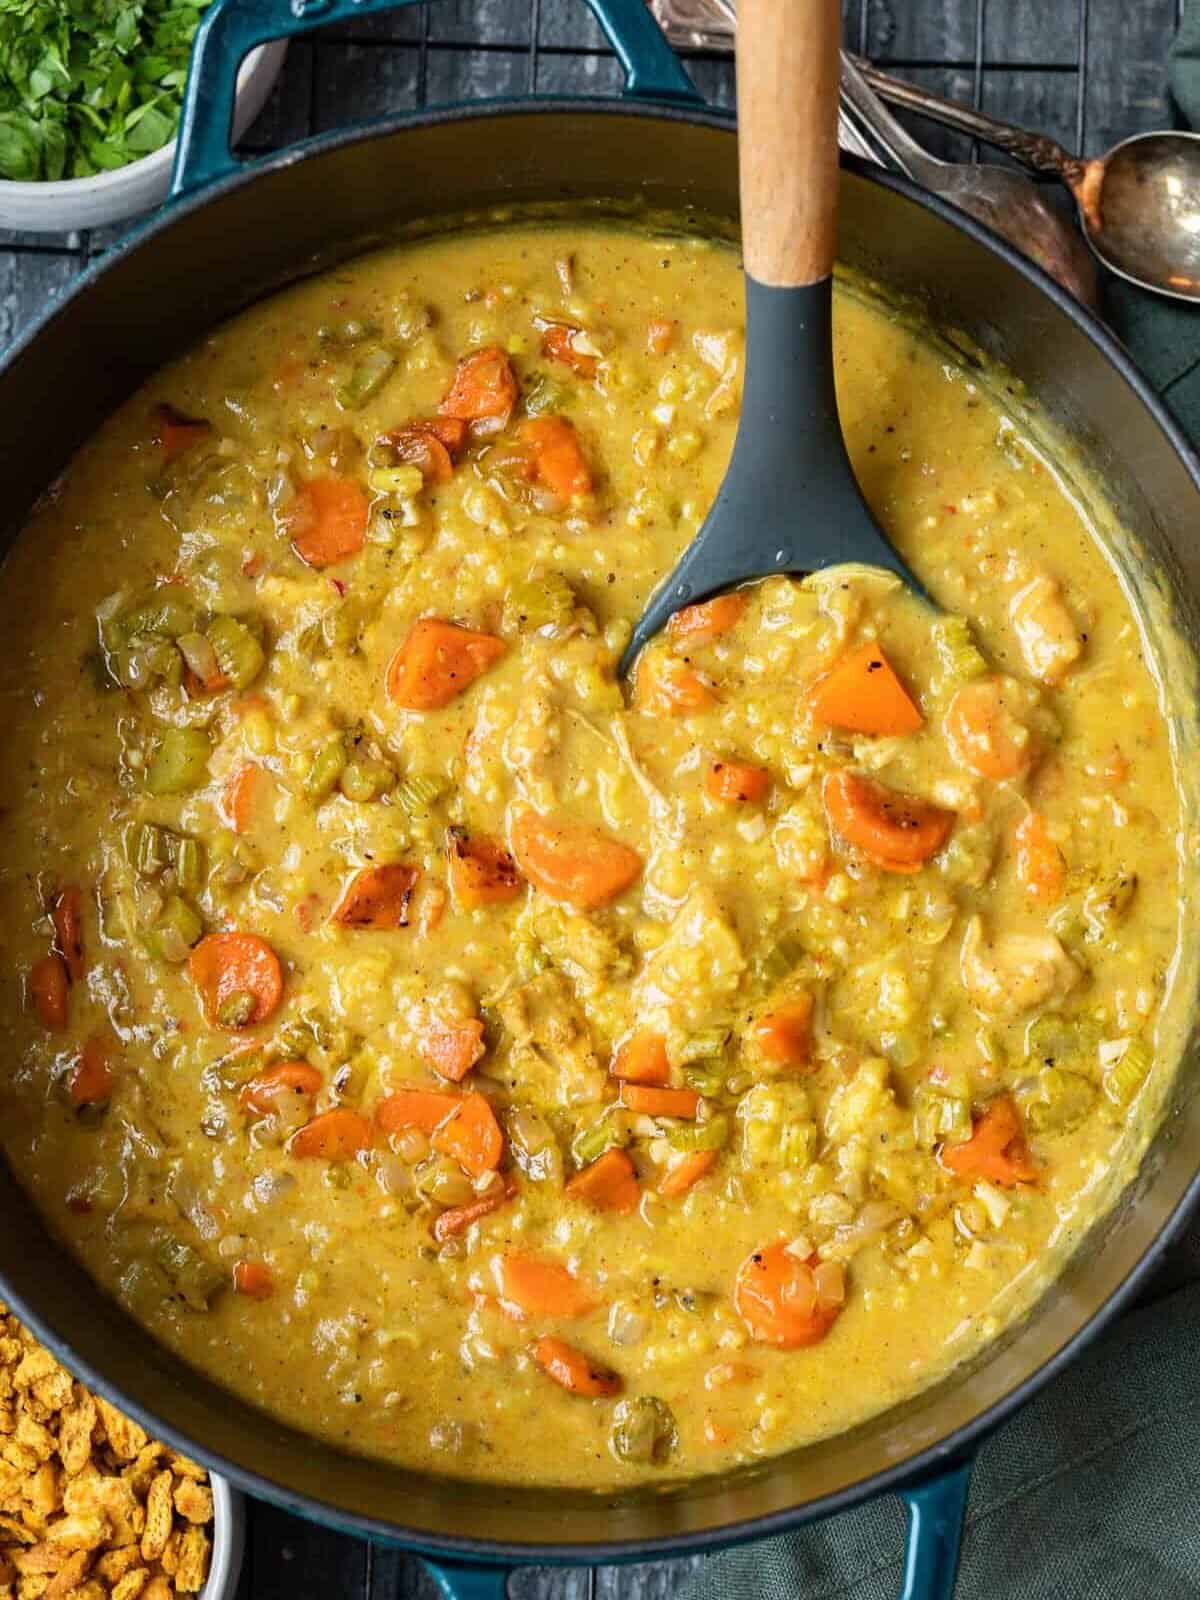 vista aérea da sopa mulligatawny indiana em um forno holandês com uma colher de servir. Cenouras fatiadas, aipo, frango e arroz são visíveis na base cremosa de curry.